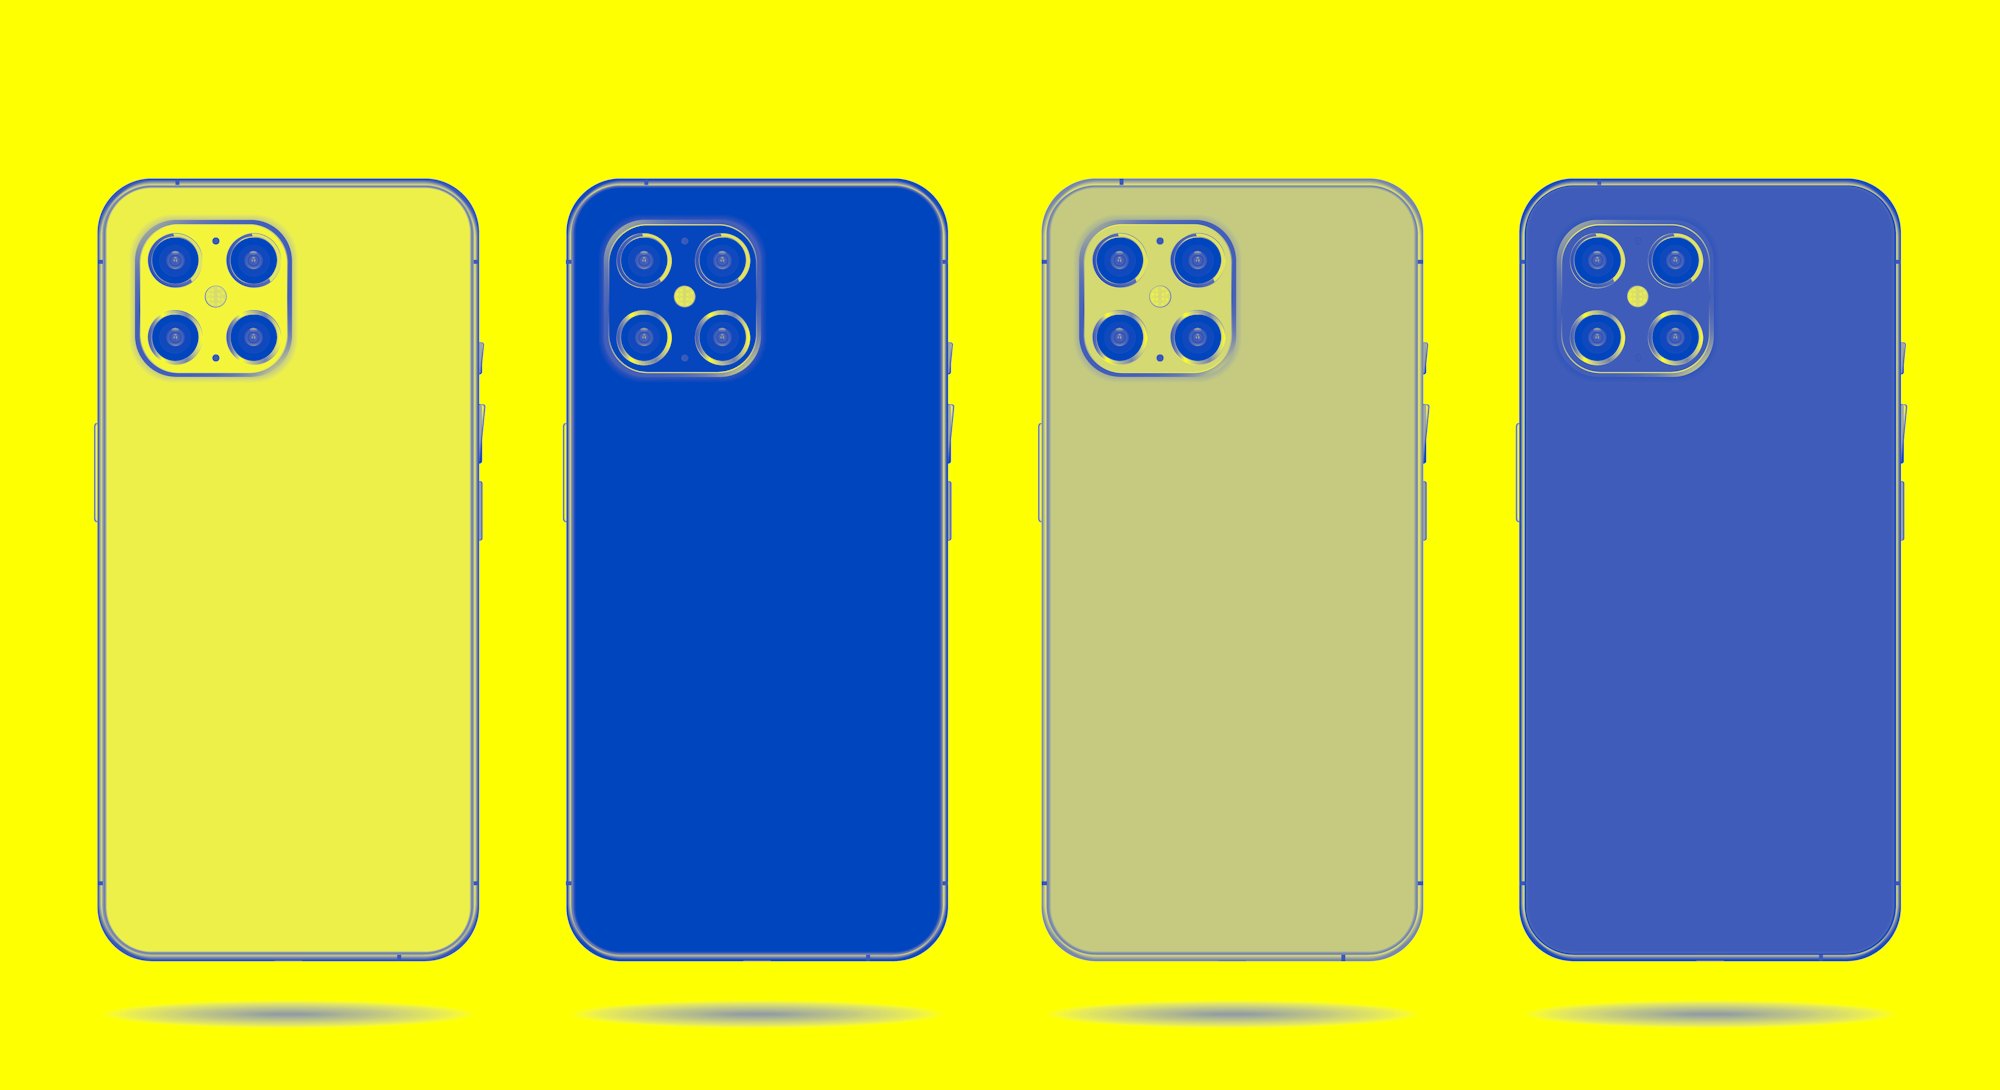 phone back set mickups isolated on white background